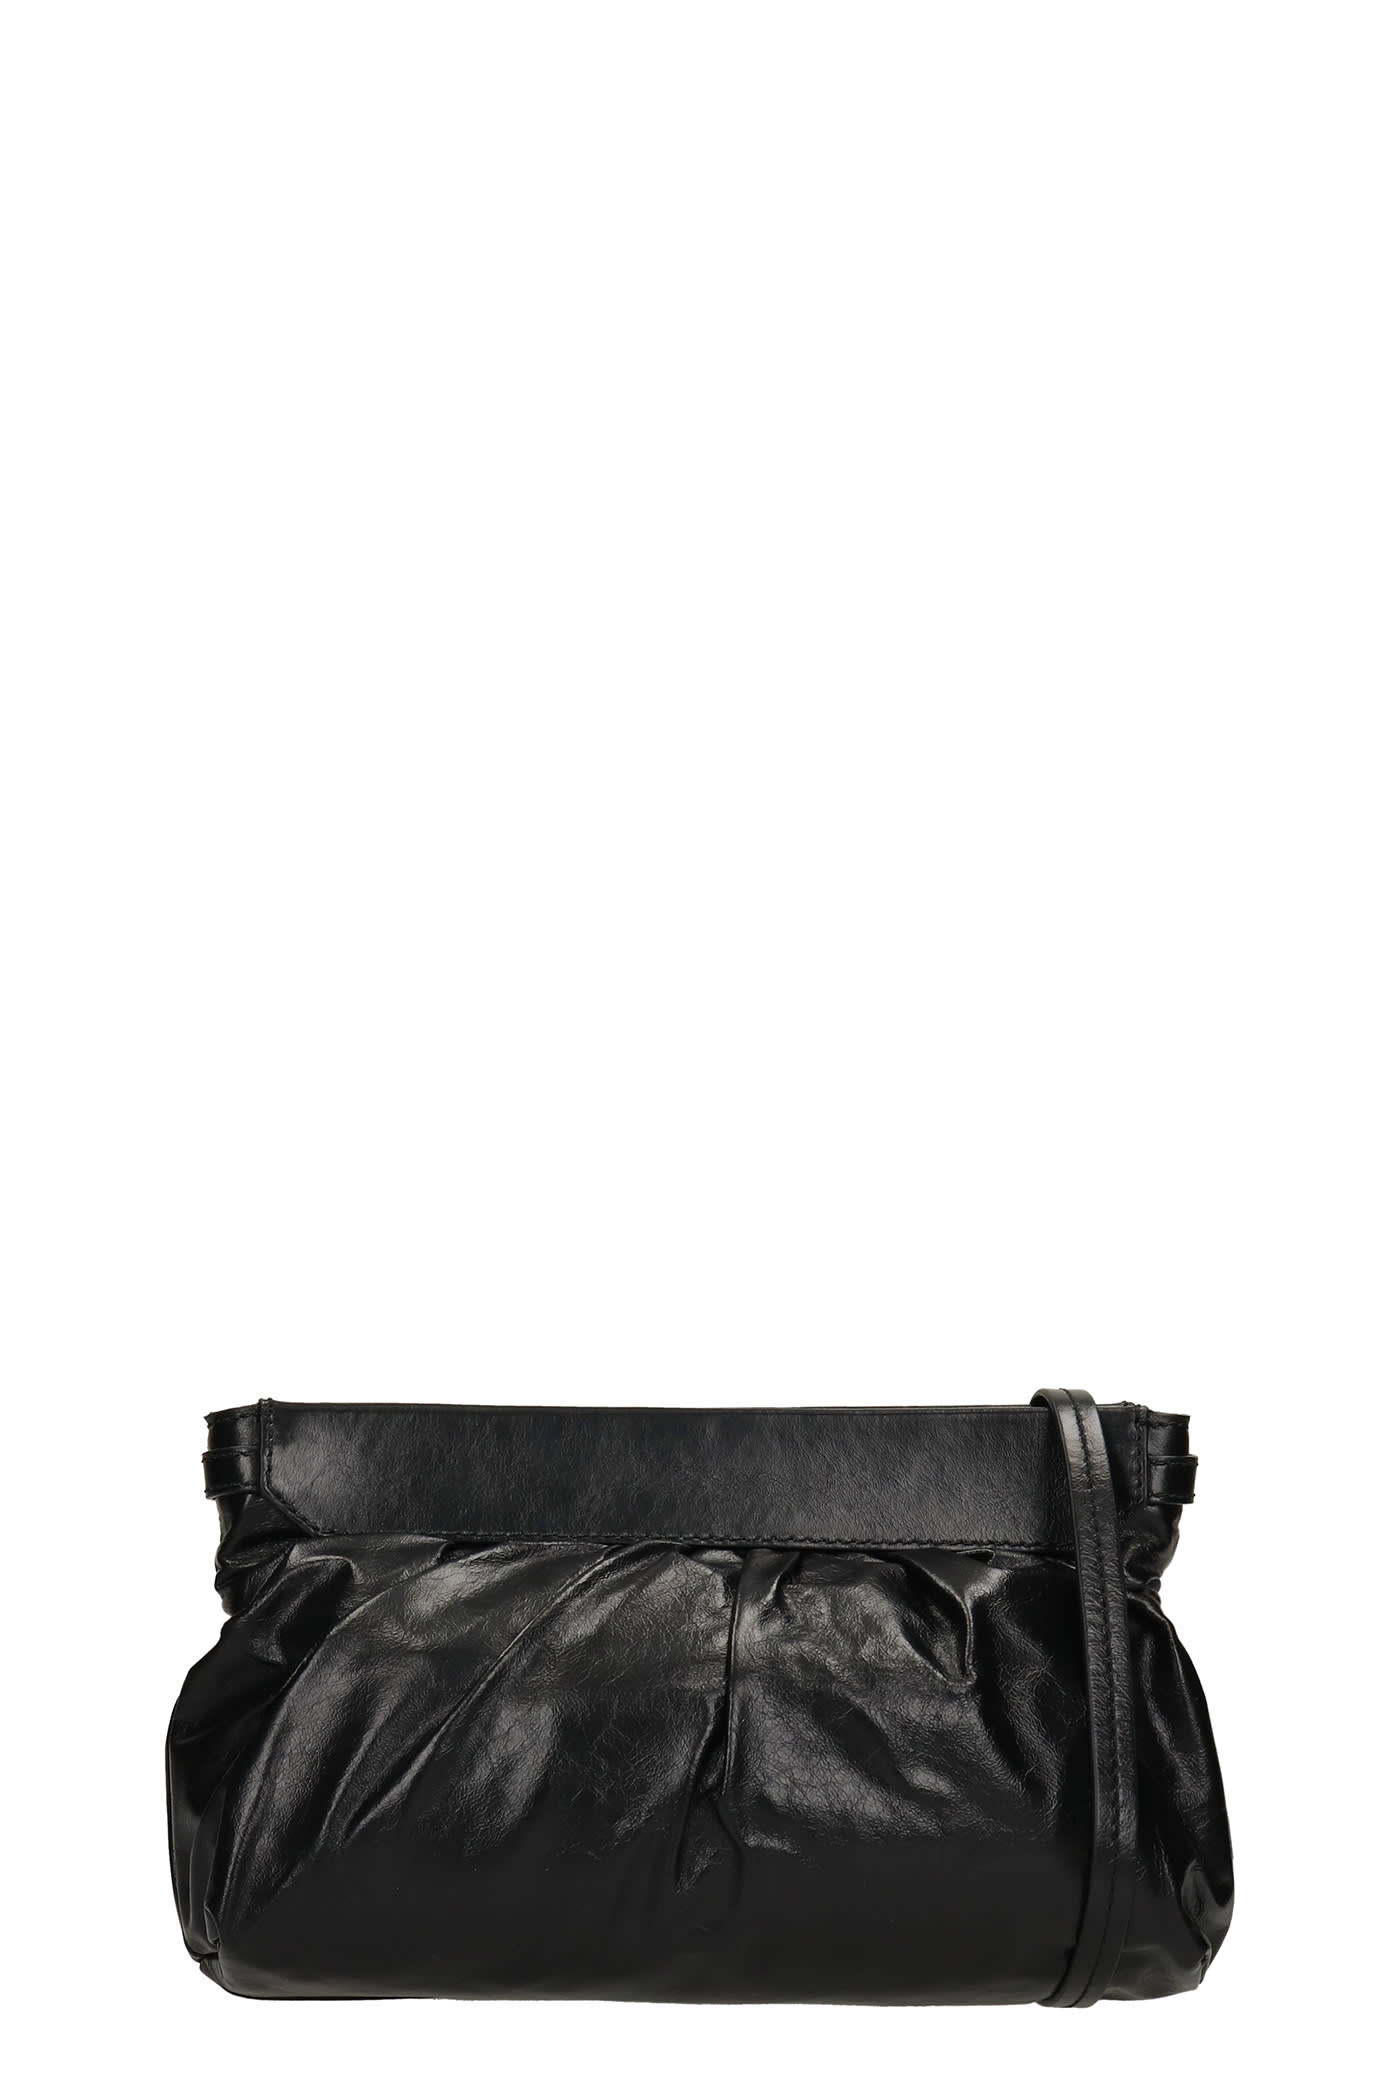 Isabel Marant Luzes Shoulder Bag In Black Leather